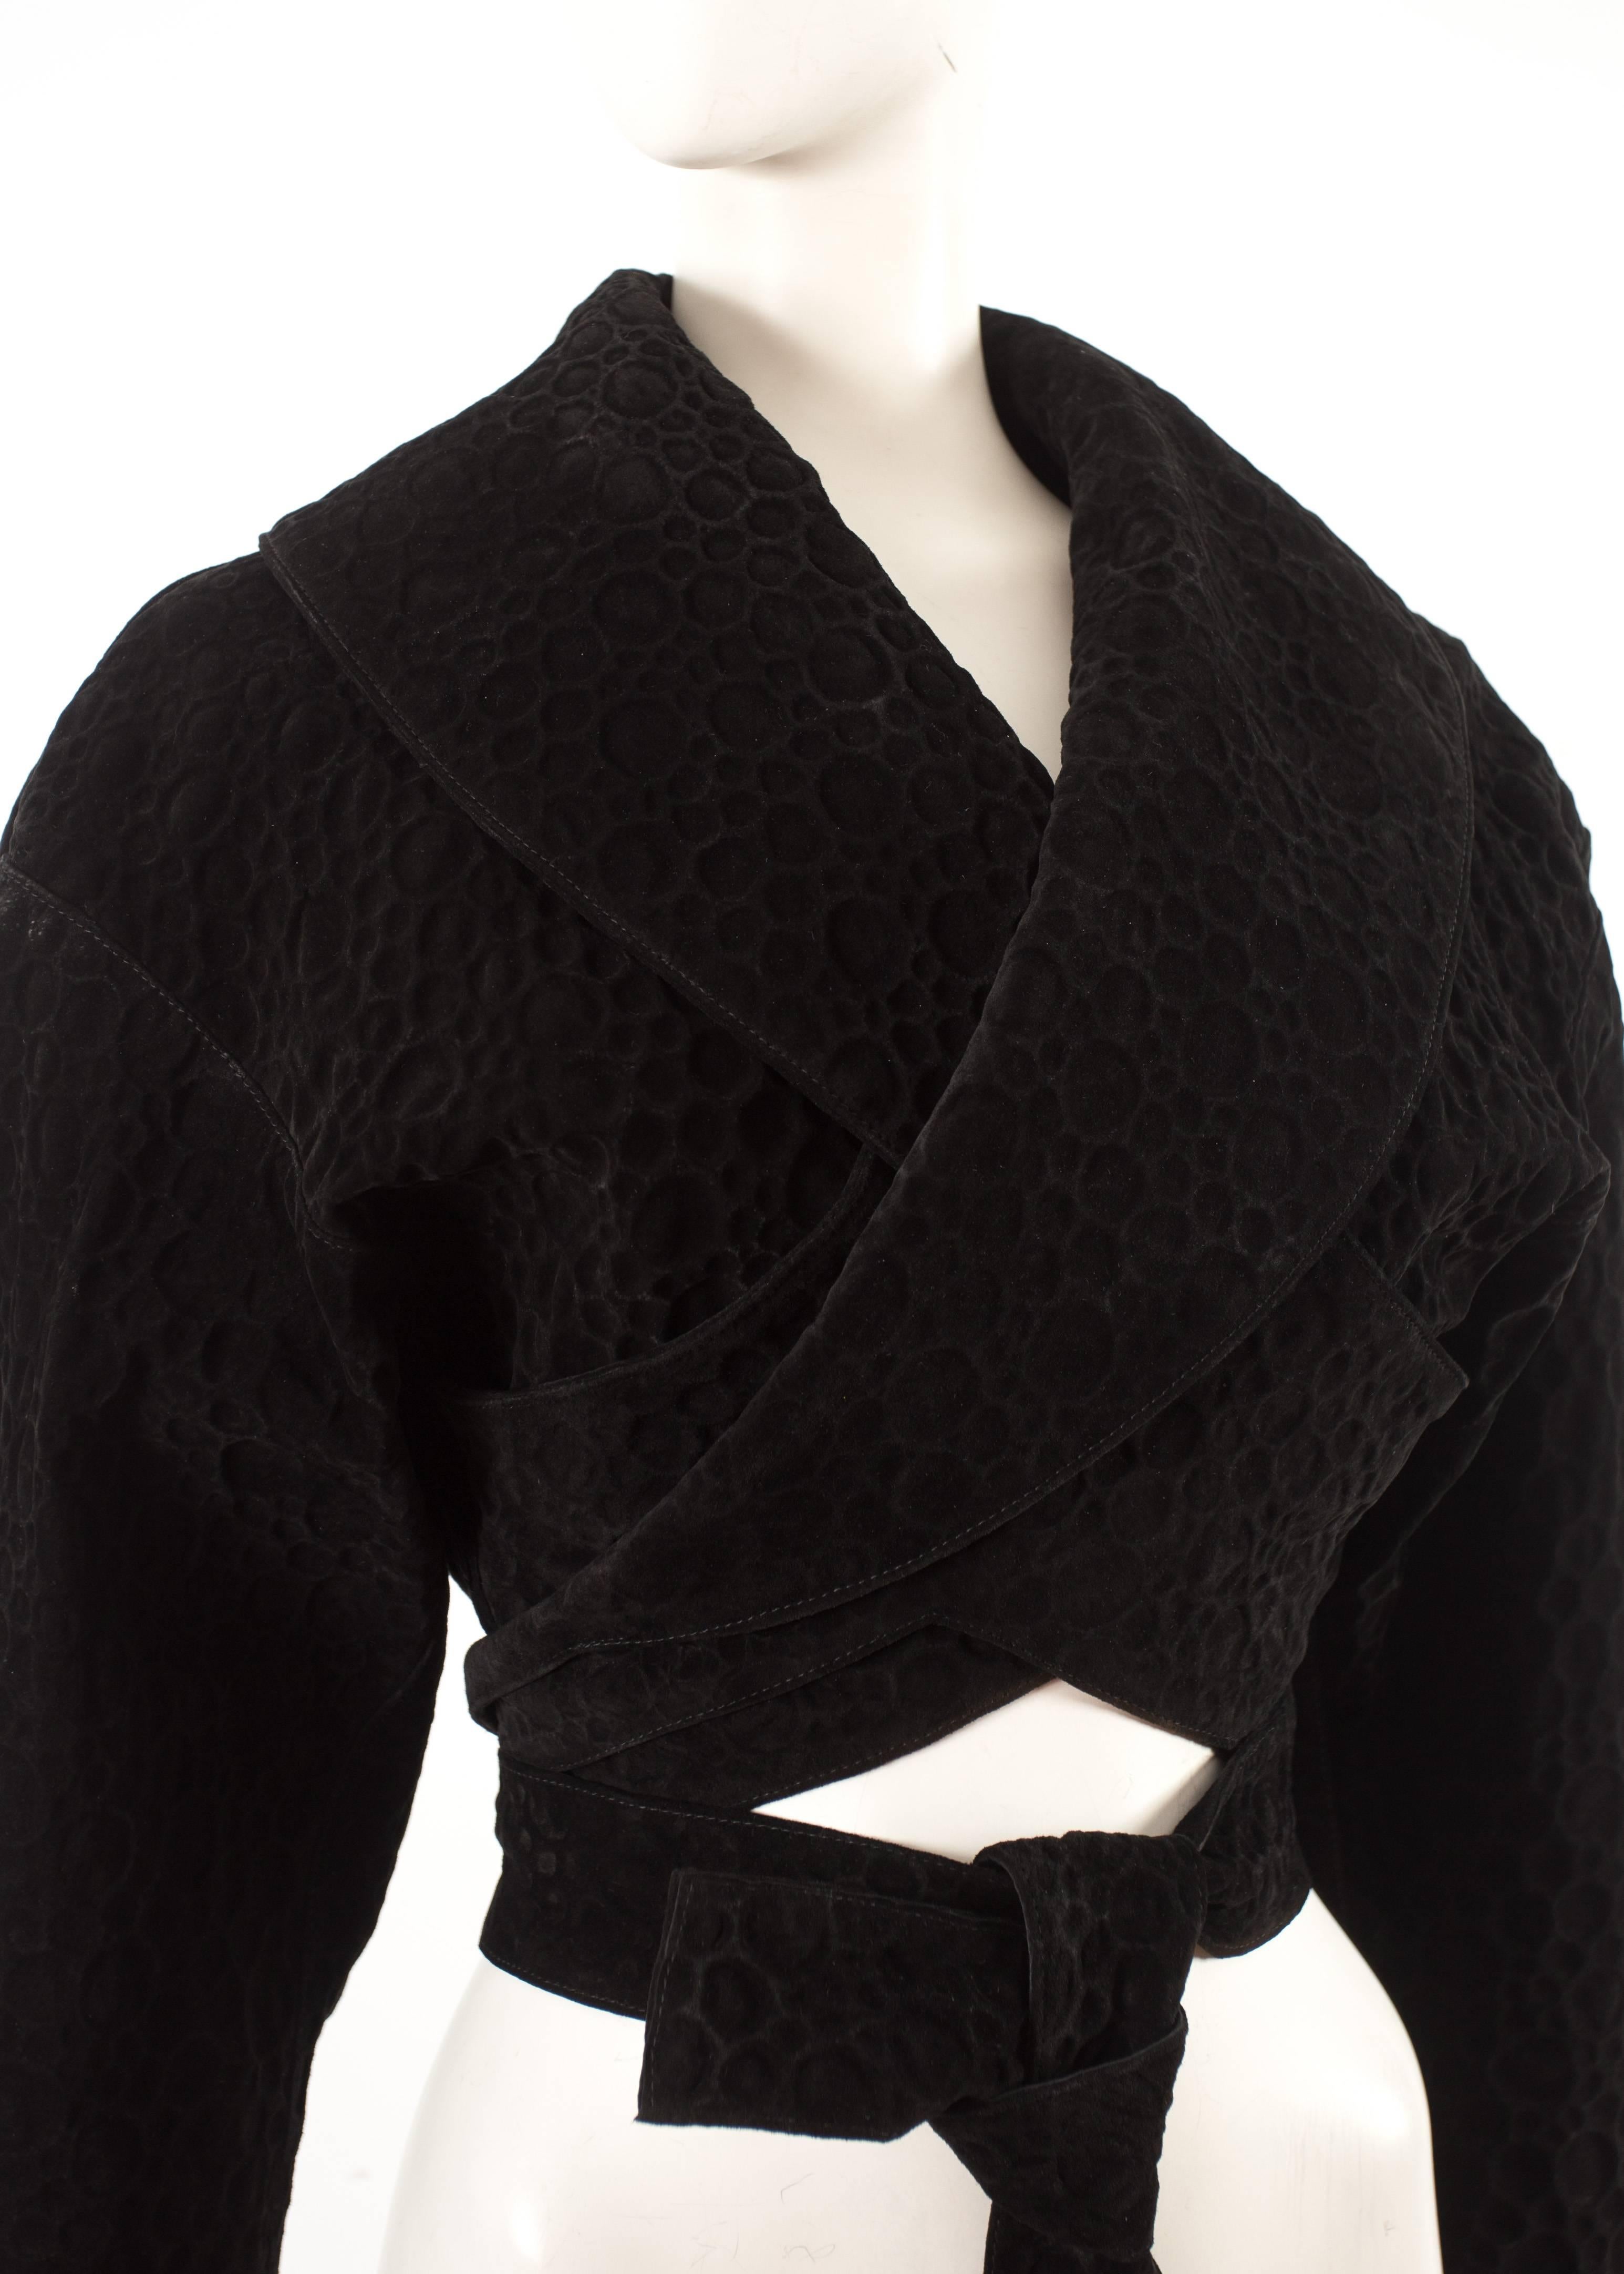 Alaia - Automne-Hiver 1987 - Veste enveloppante en daim noir, doublée de soie et munie de longues bretelles
